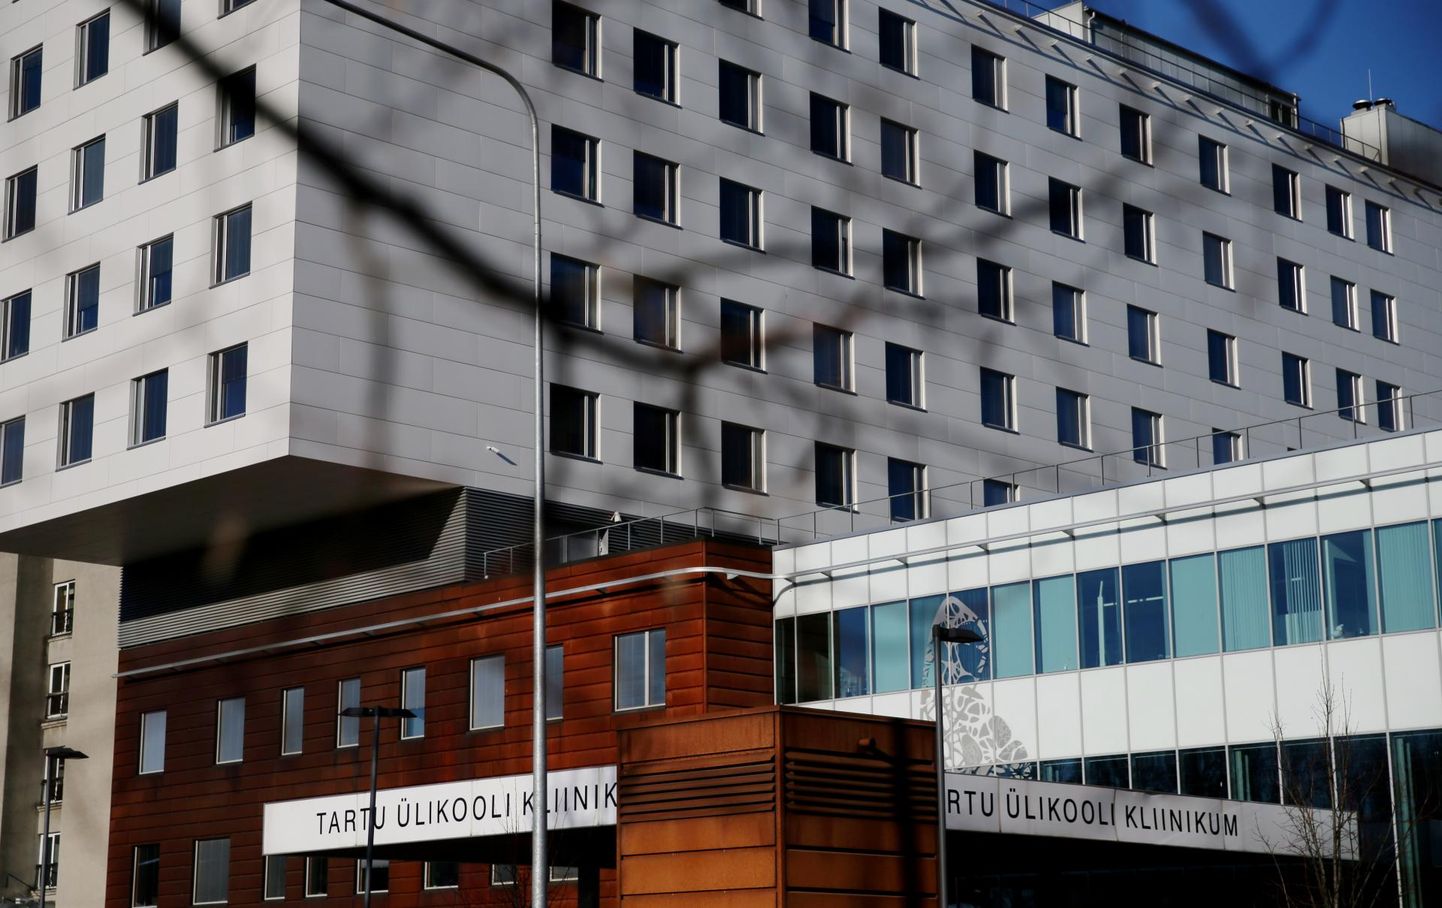 Tartu Ülikooli kliinikumis rikuti mullu riigihangete korda ostudelt kogusummaga ligi viis miljonit eurot.